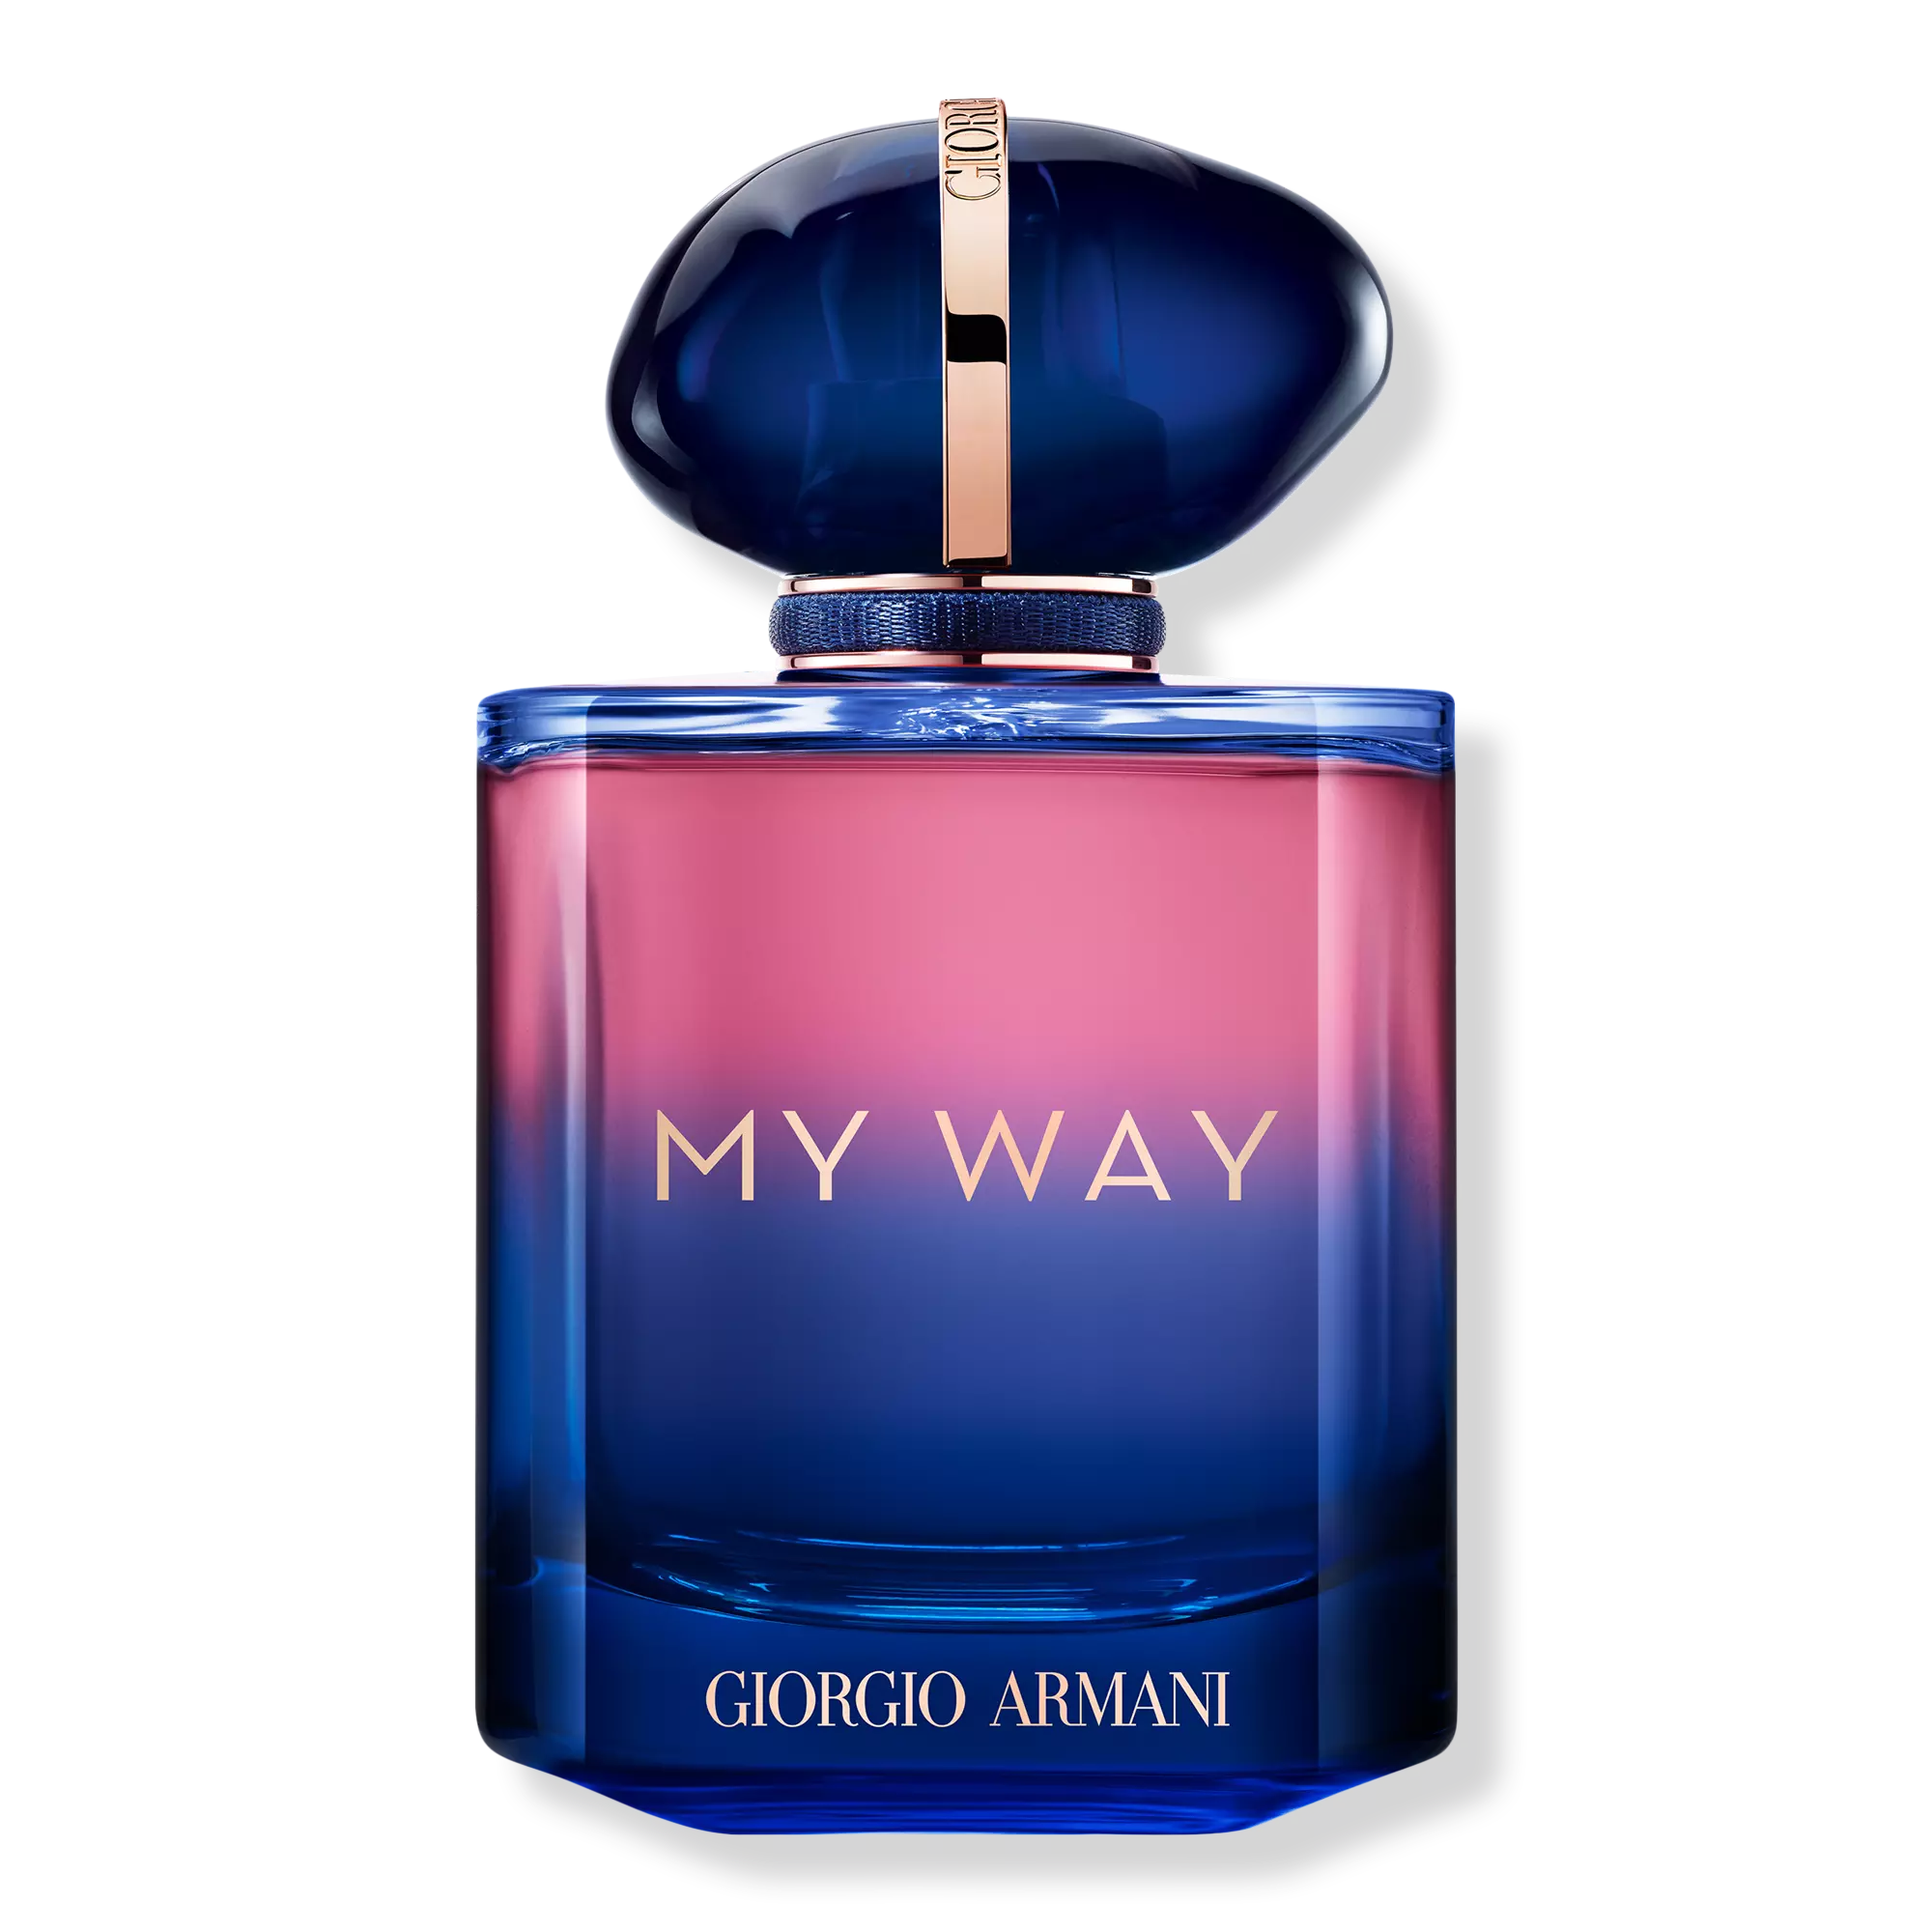 Perfume Giorgio Armani My Way Le Parfum (W) / 50 ml - 3614273844666- Prive Perfumes Honduras